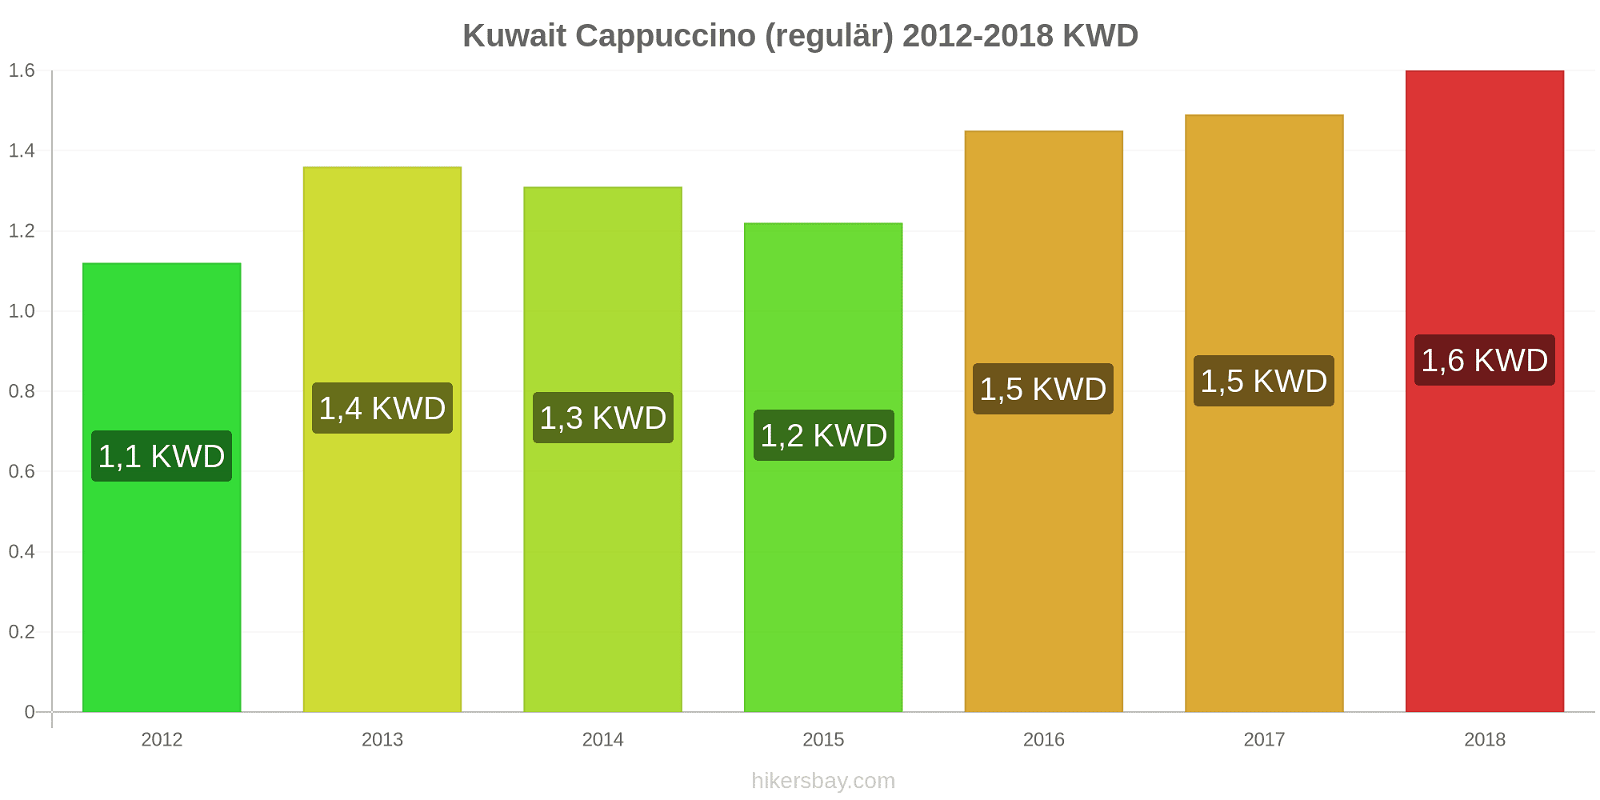 Kuwait Preisänderungen Cappuccino (regulär) hikersbay.com